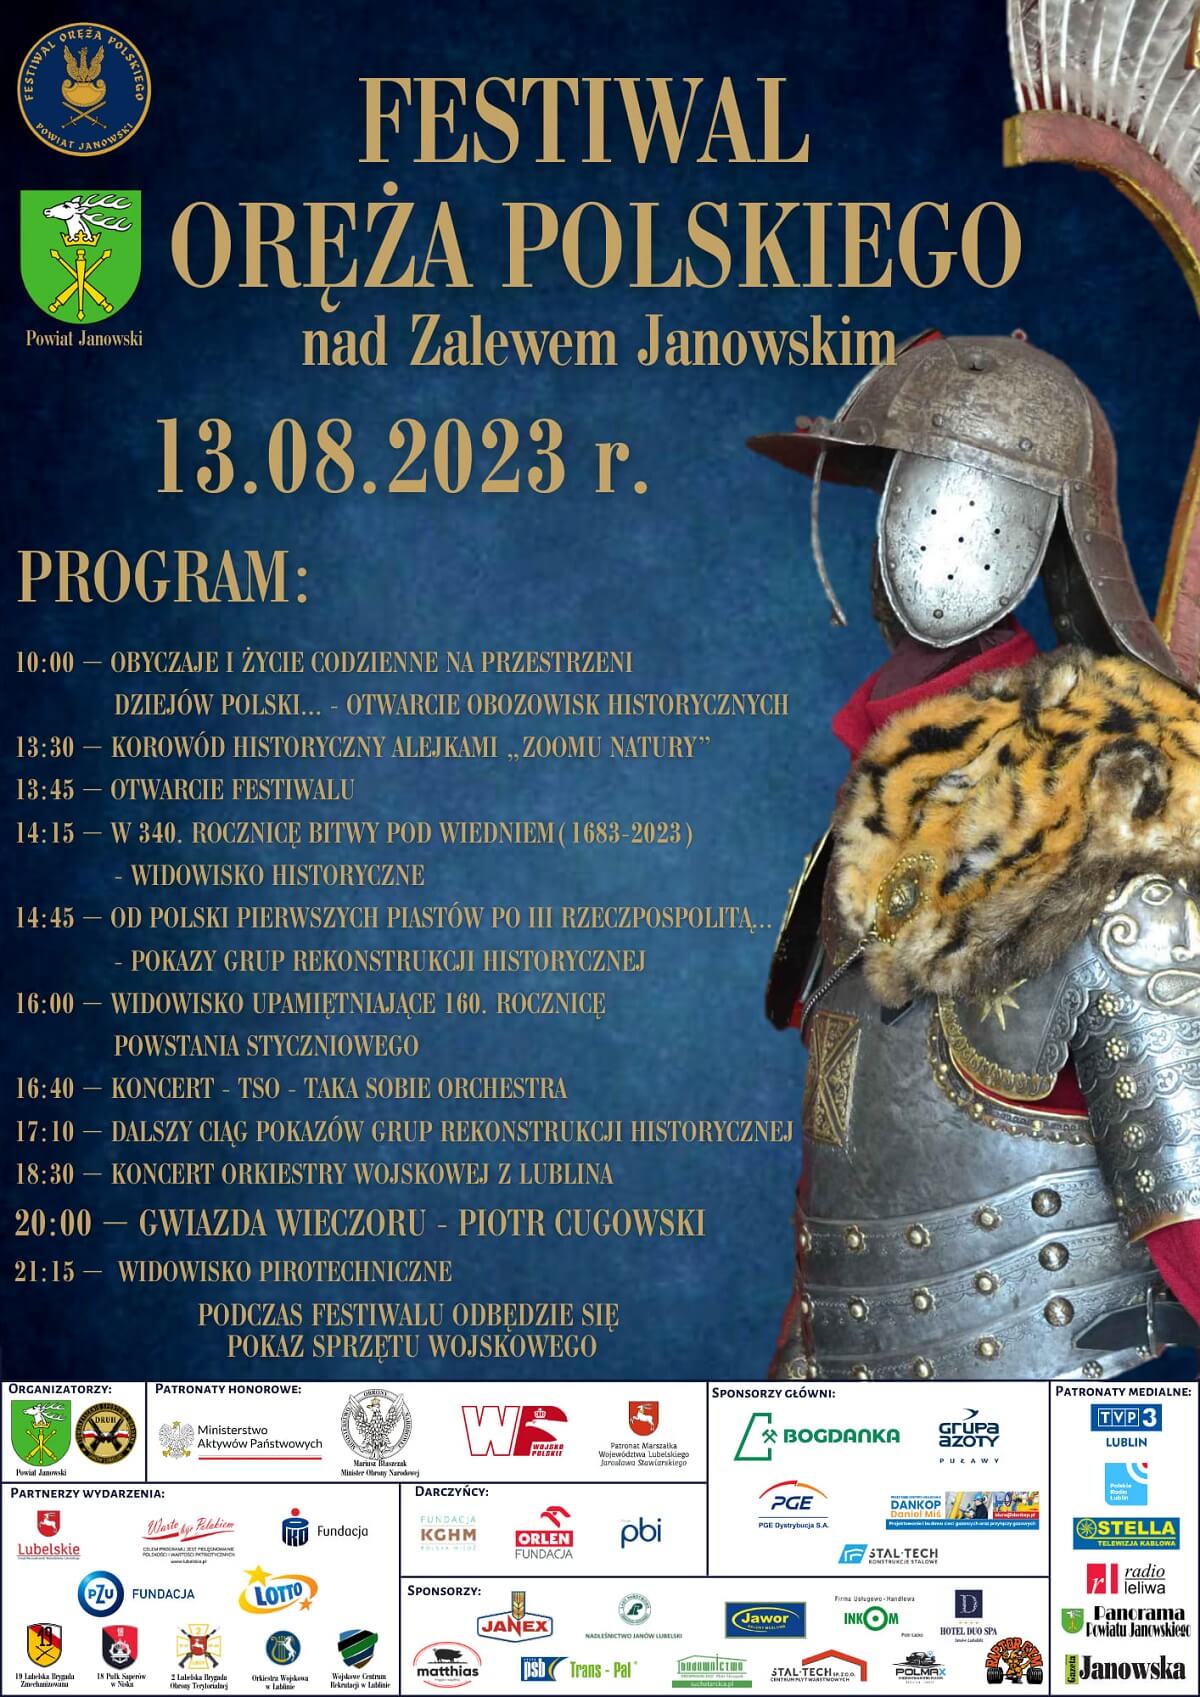 Festiwal Oręża Polskiego nad Zalewem Janowskim 2023 - plakat, program wydarzenia